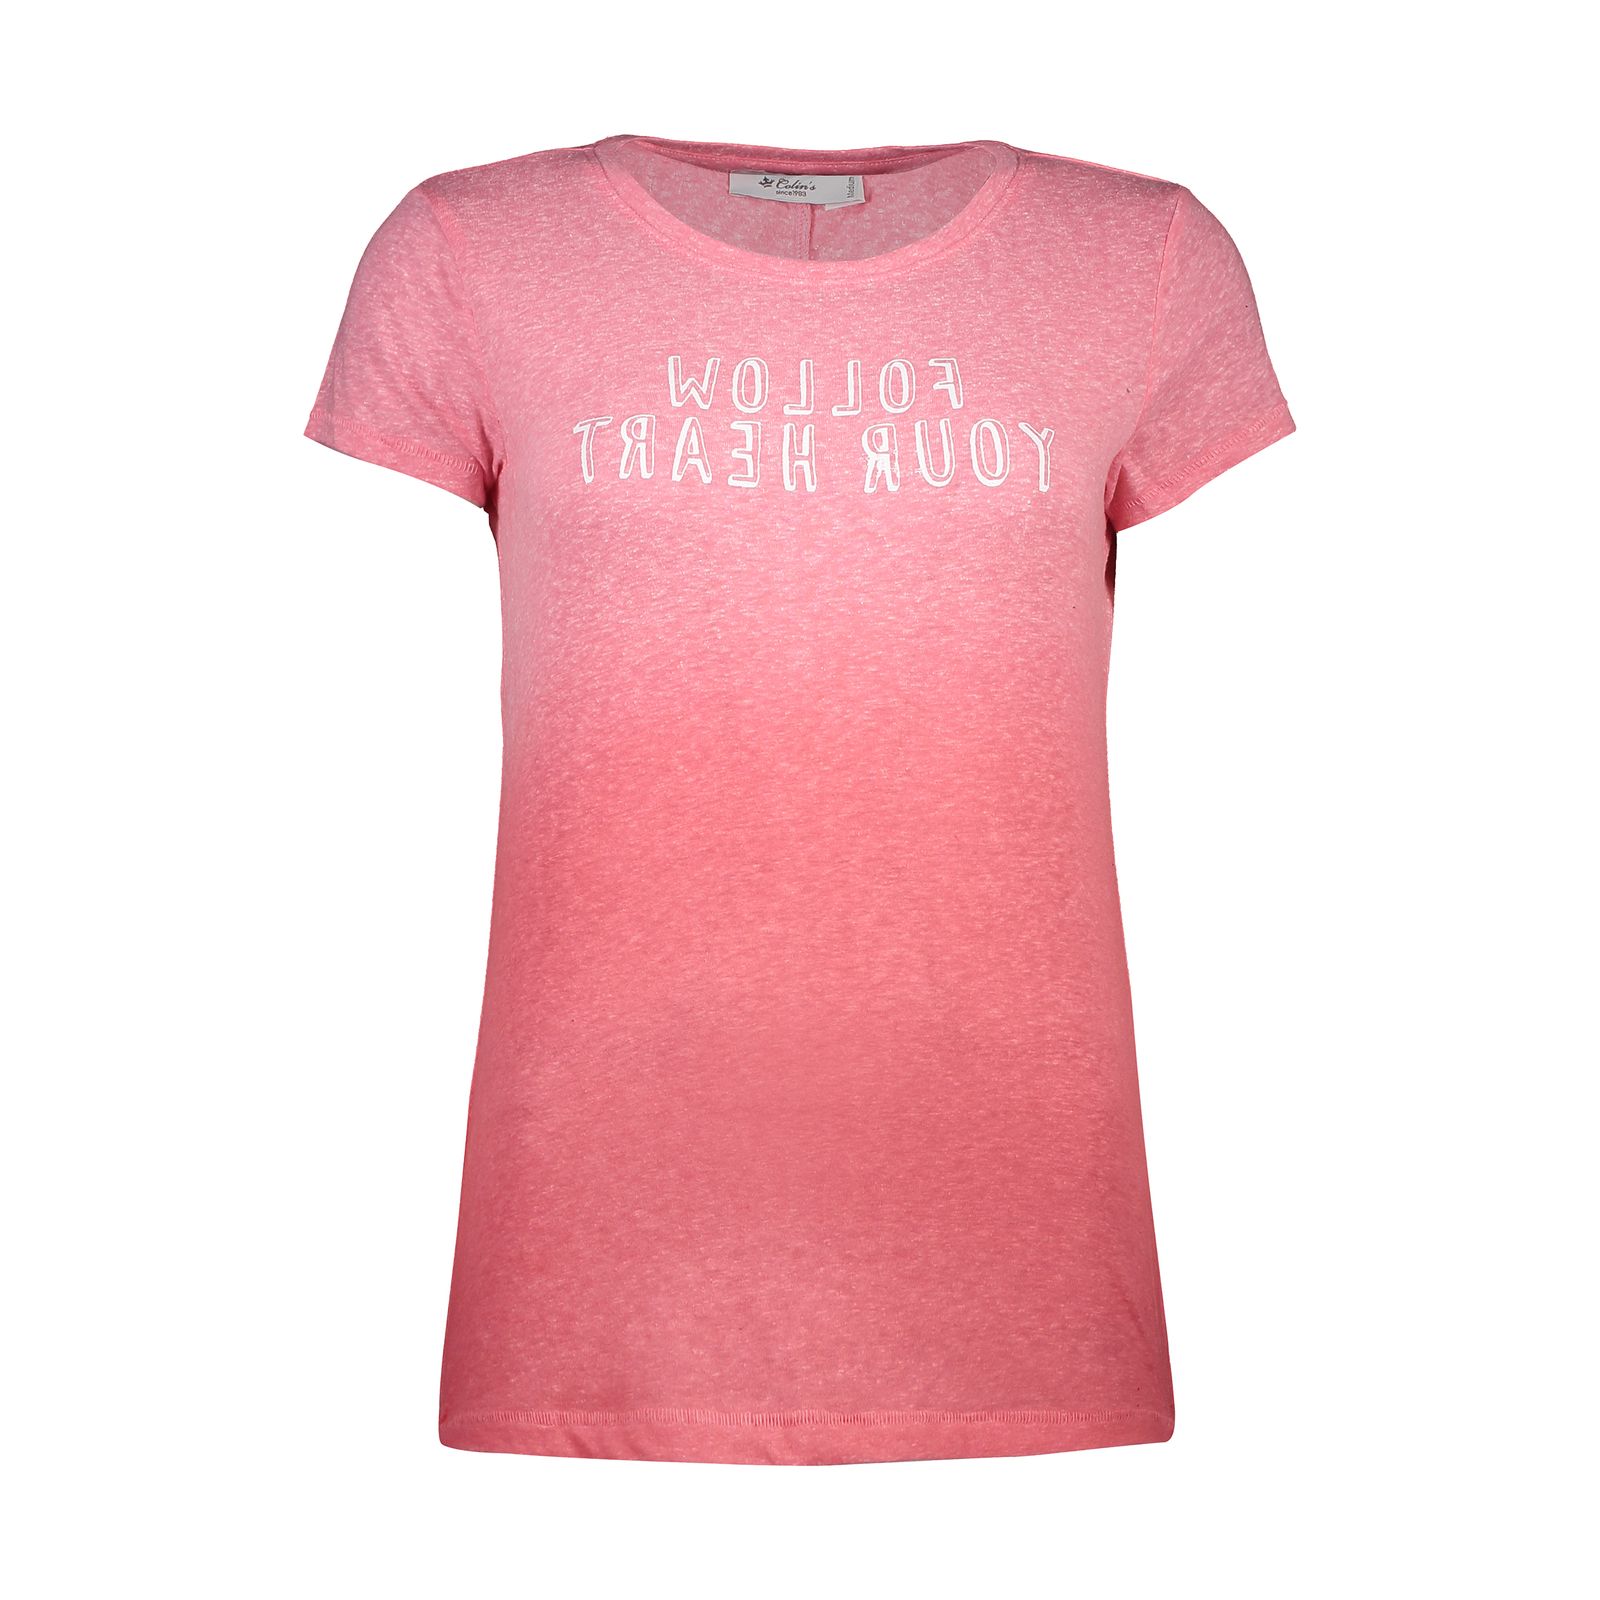 تی شرت زنانه کالینز مدل CL1031616-PINK MELANGE - صورتی - 1